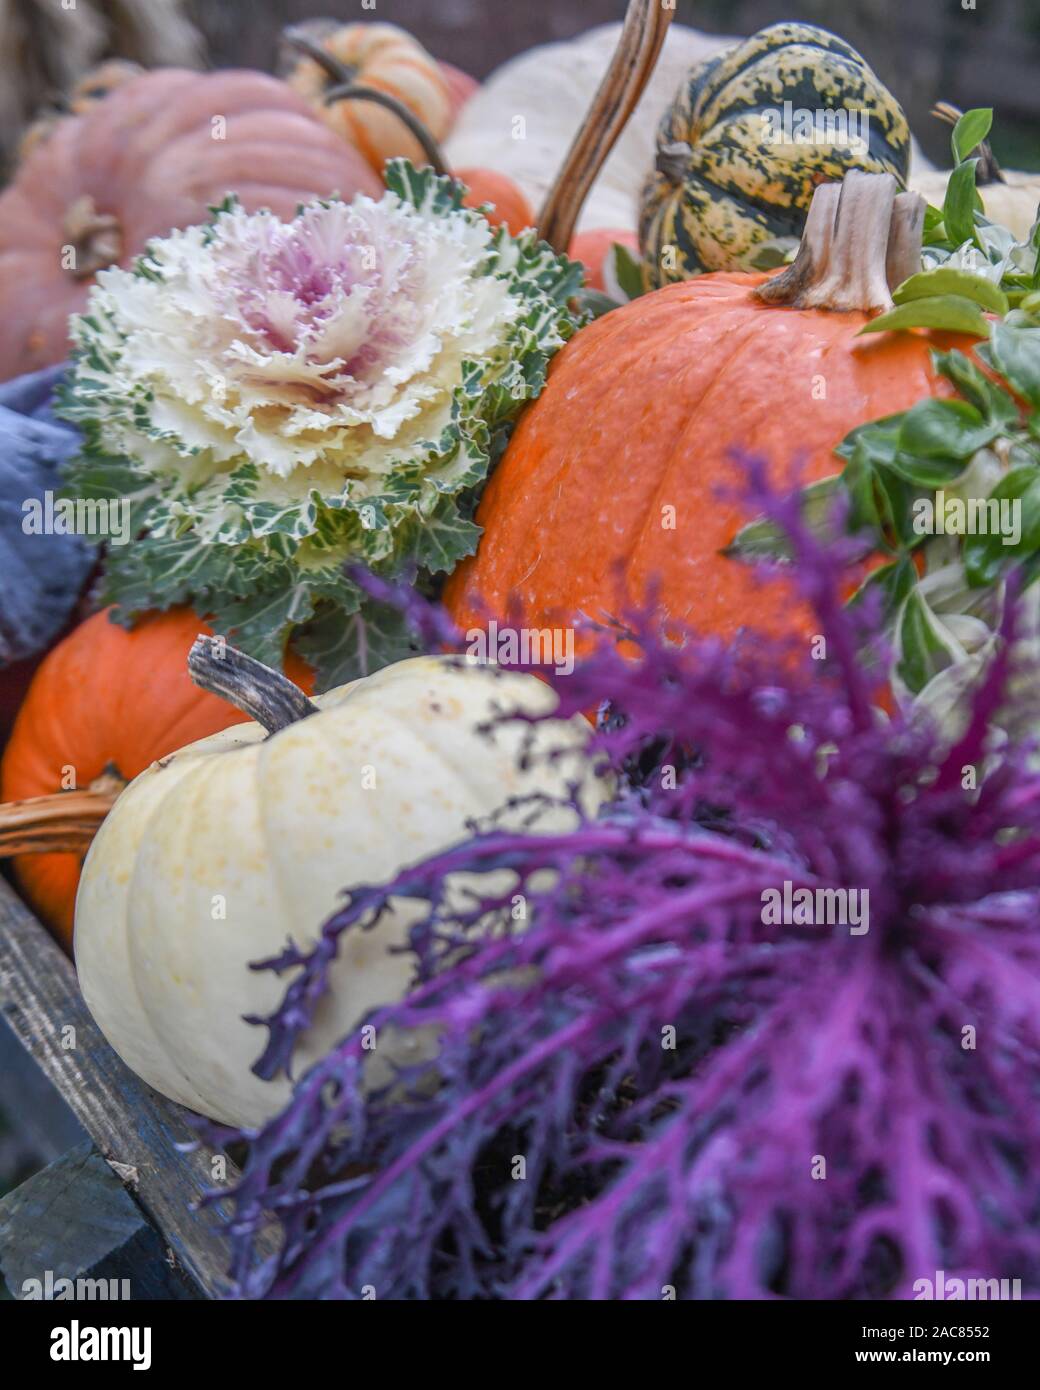 Récolte d'automne - automne fruits - légumes - aliments d'automne automne - Thanksgiving cornucopia - pommes poires melons courges citrouilles dans un affichage de l'action de grâce Banque D'Images